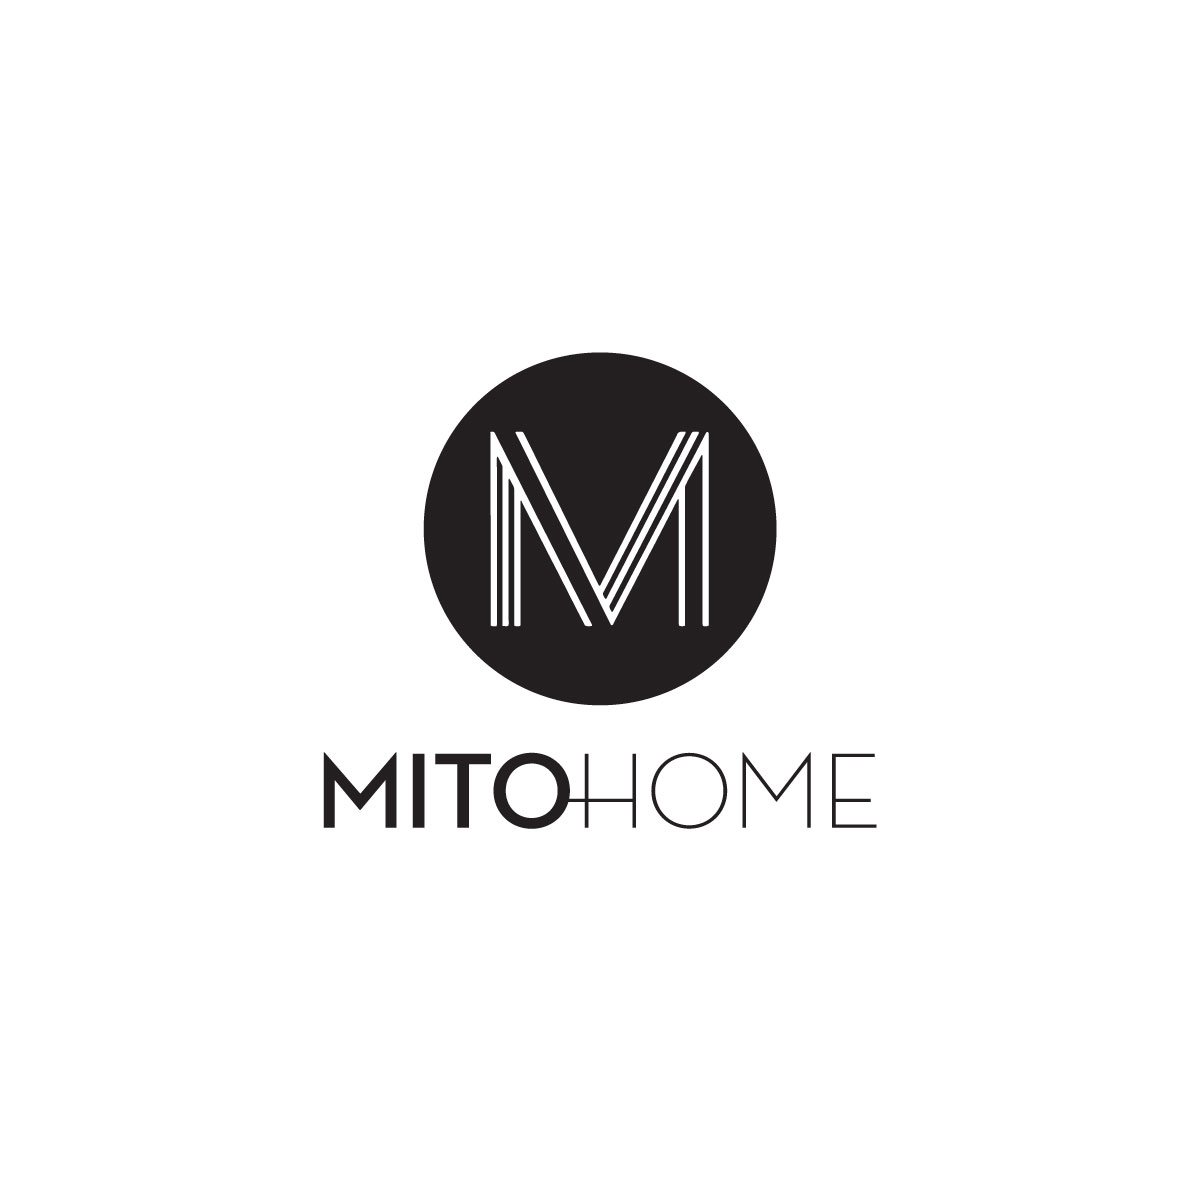 MitoHome